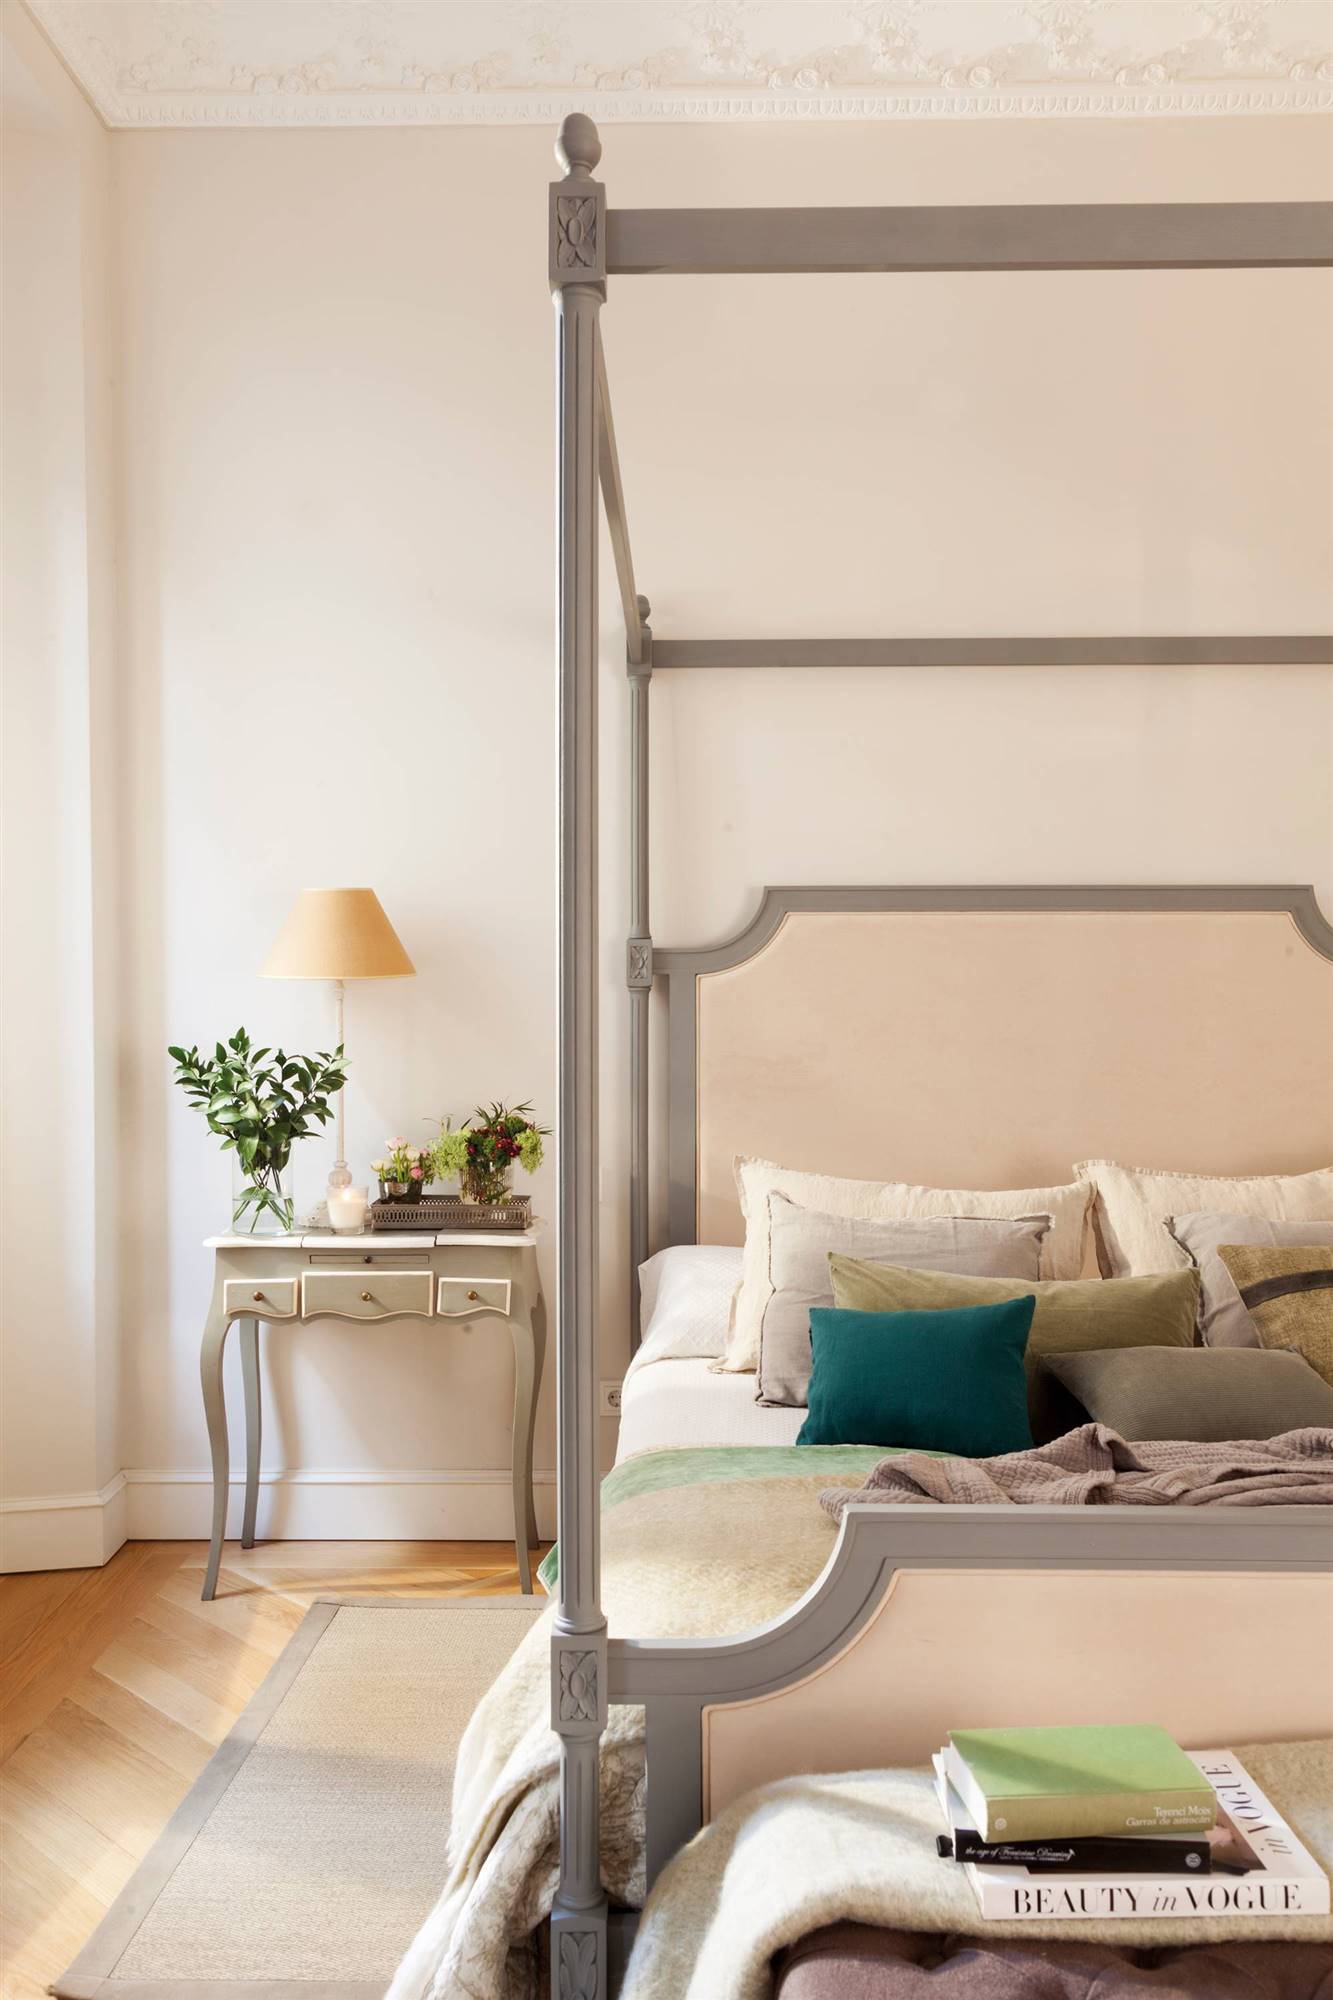 Dormitorio con cama con dosel y cabecero de estilo francés en color gris. 